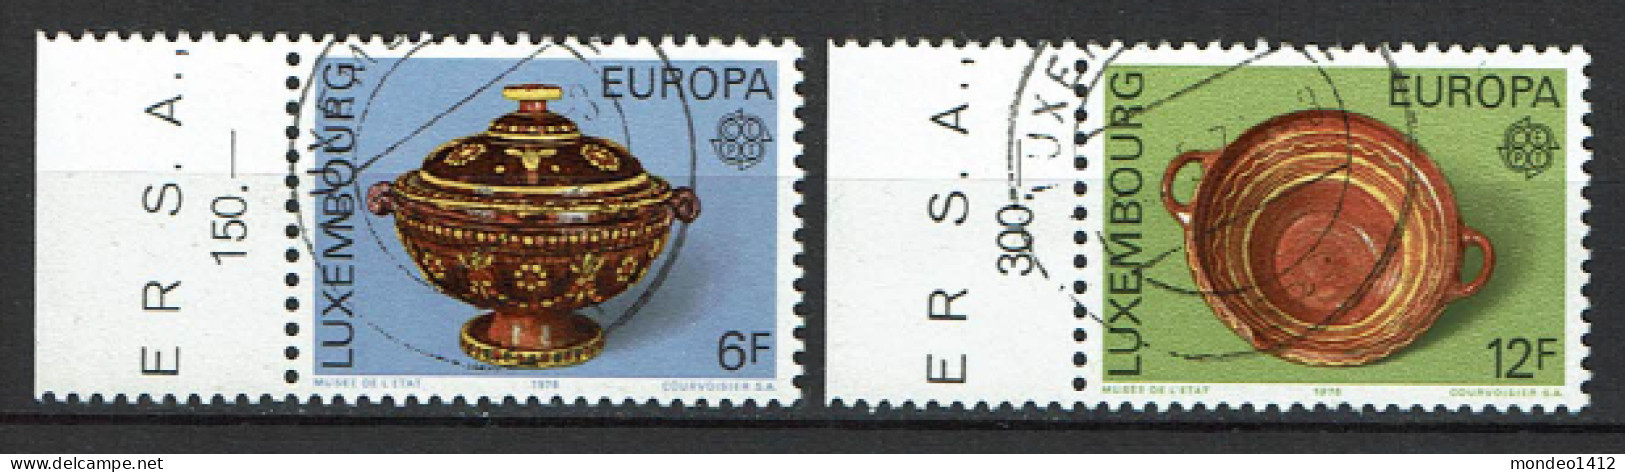 Luxembourg 1975 - YT 878/879 - EUROPA Stamps - Handicrafts, Oeuvres Artisanales - Gebruikt